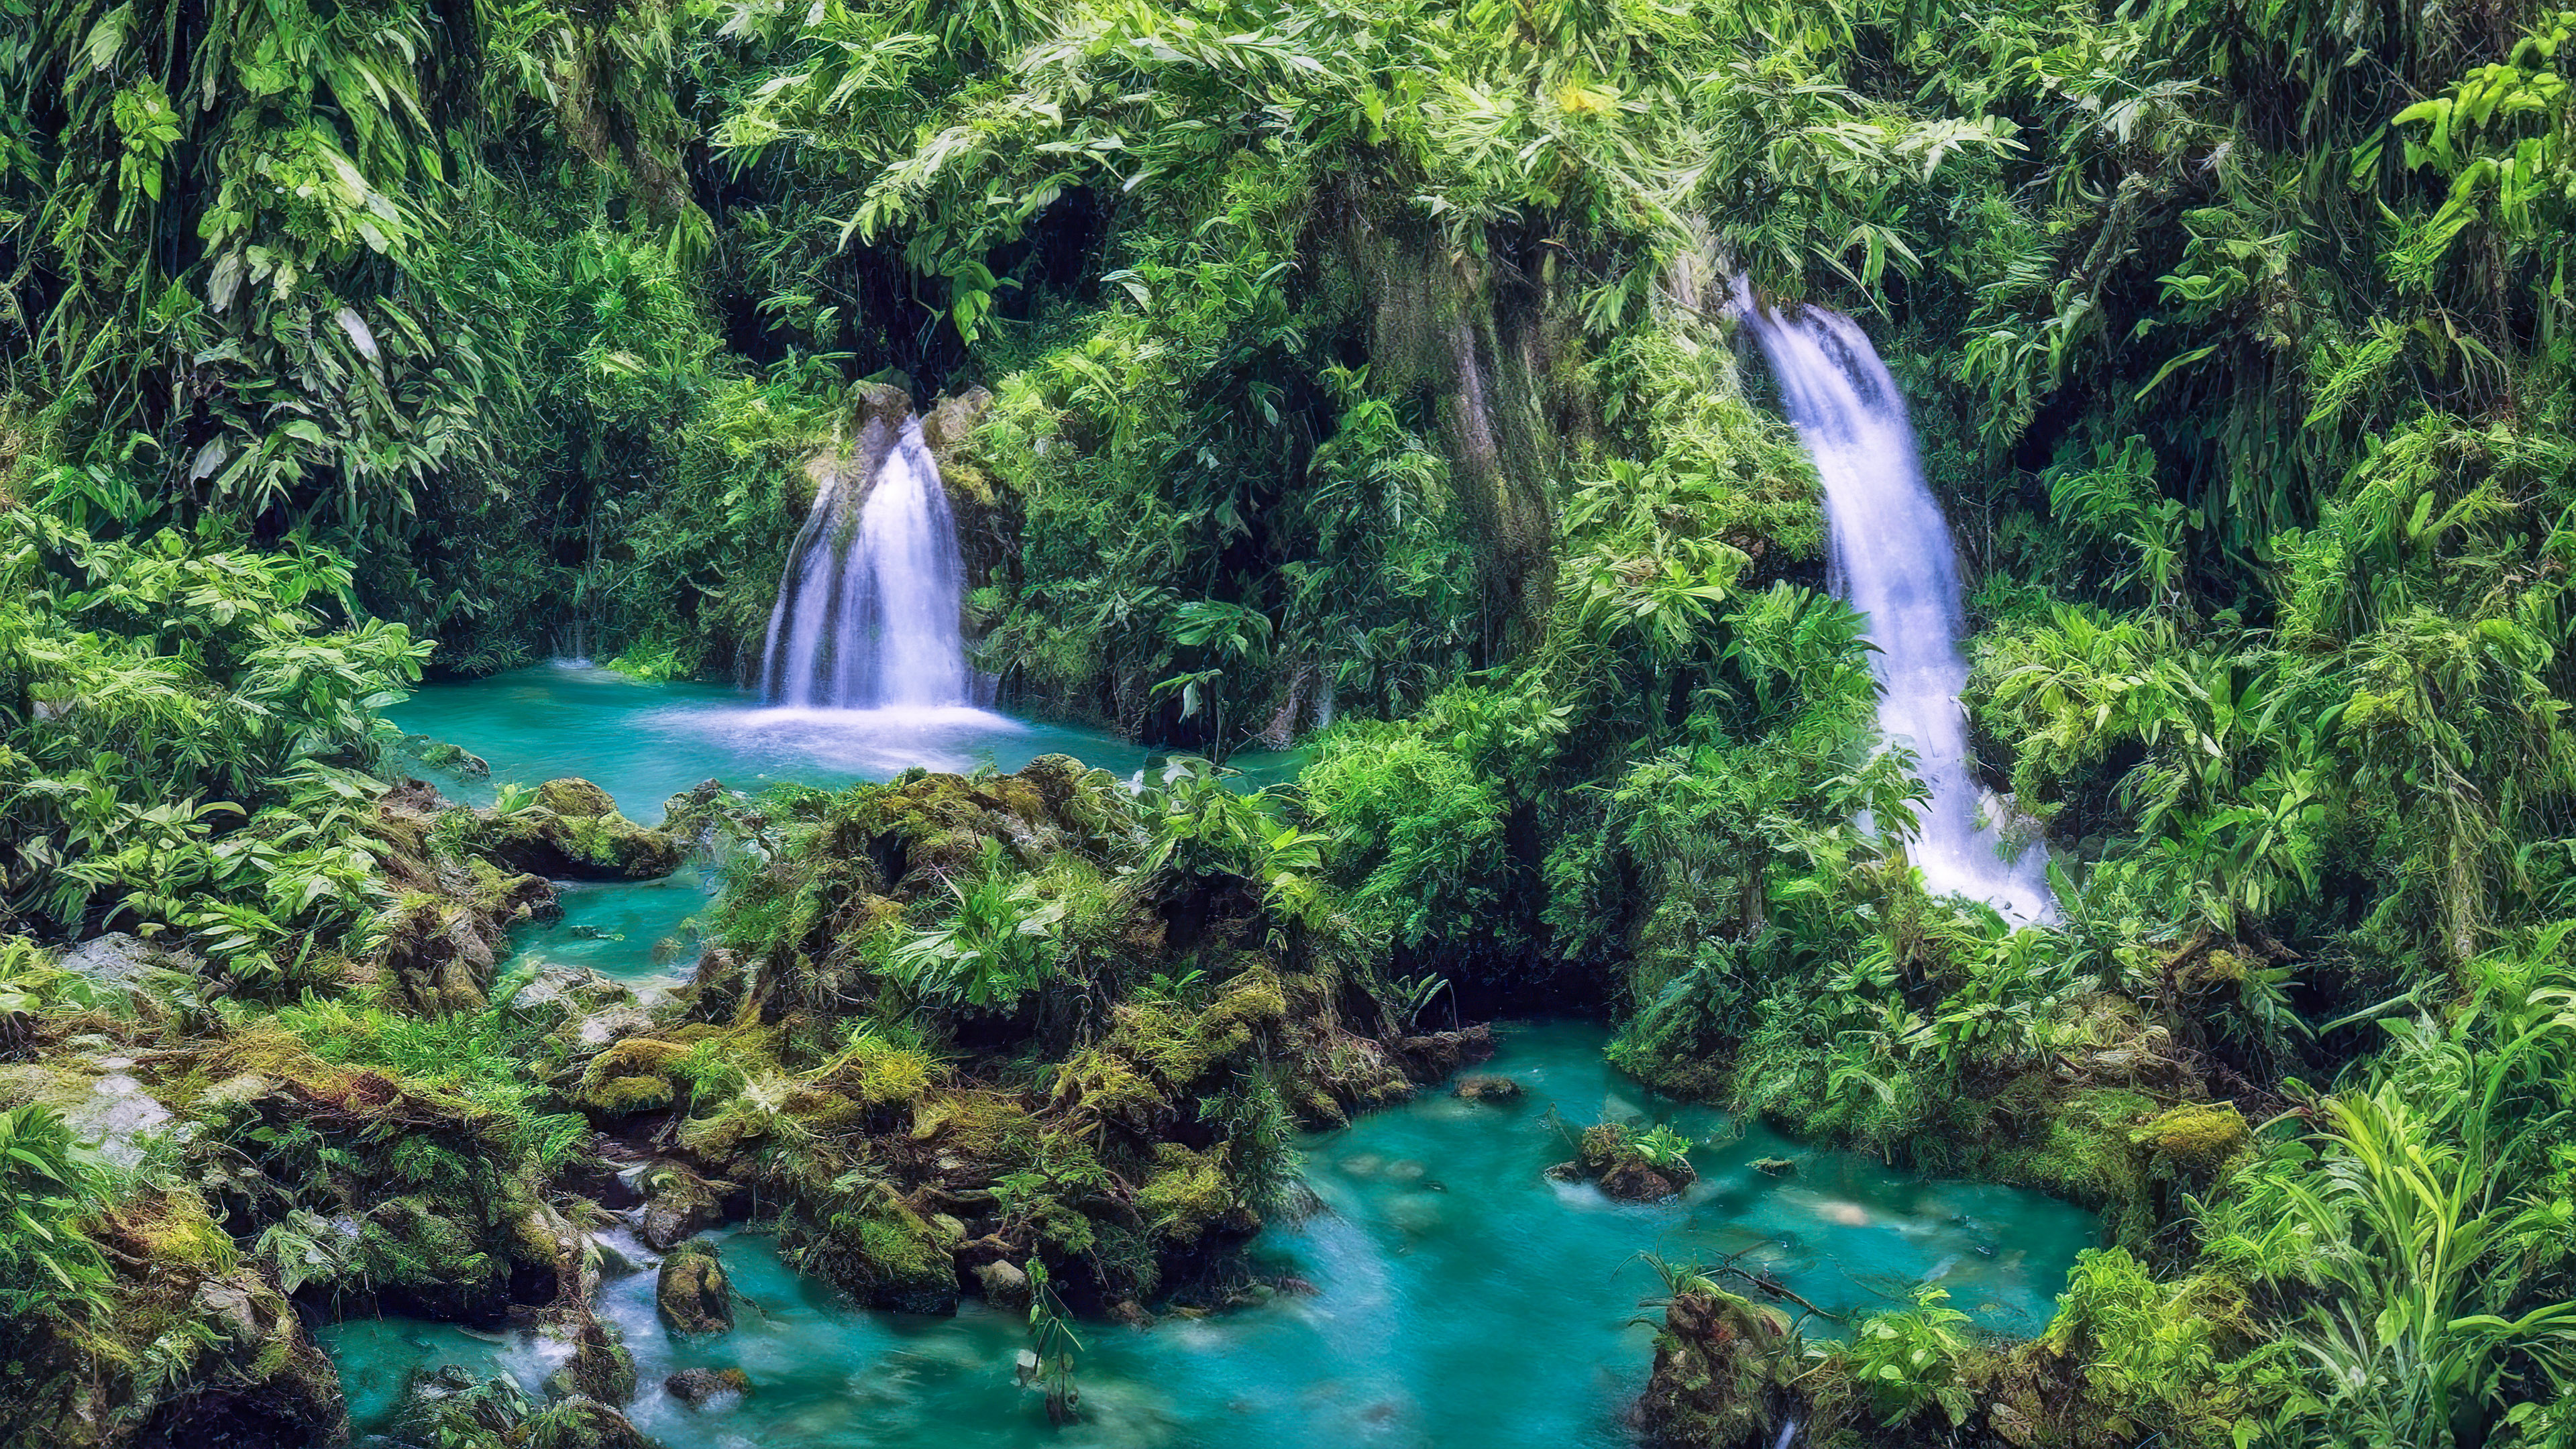 Vivez l'attrait de notre bel arrière-plan de cascade, présentant une cascade enchantée cachée profondément dans la forêt tropicale verdoyante.